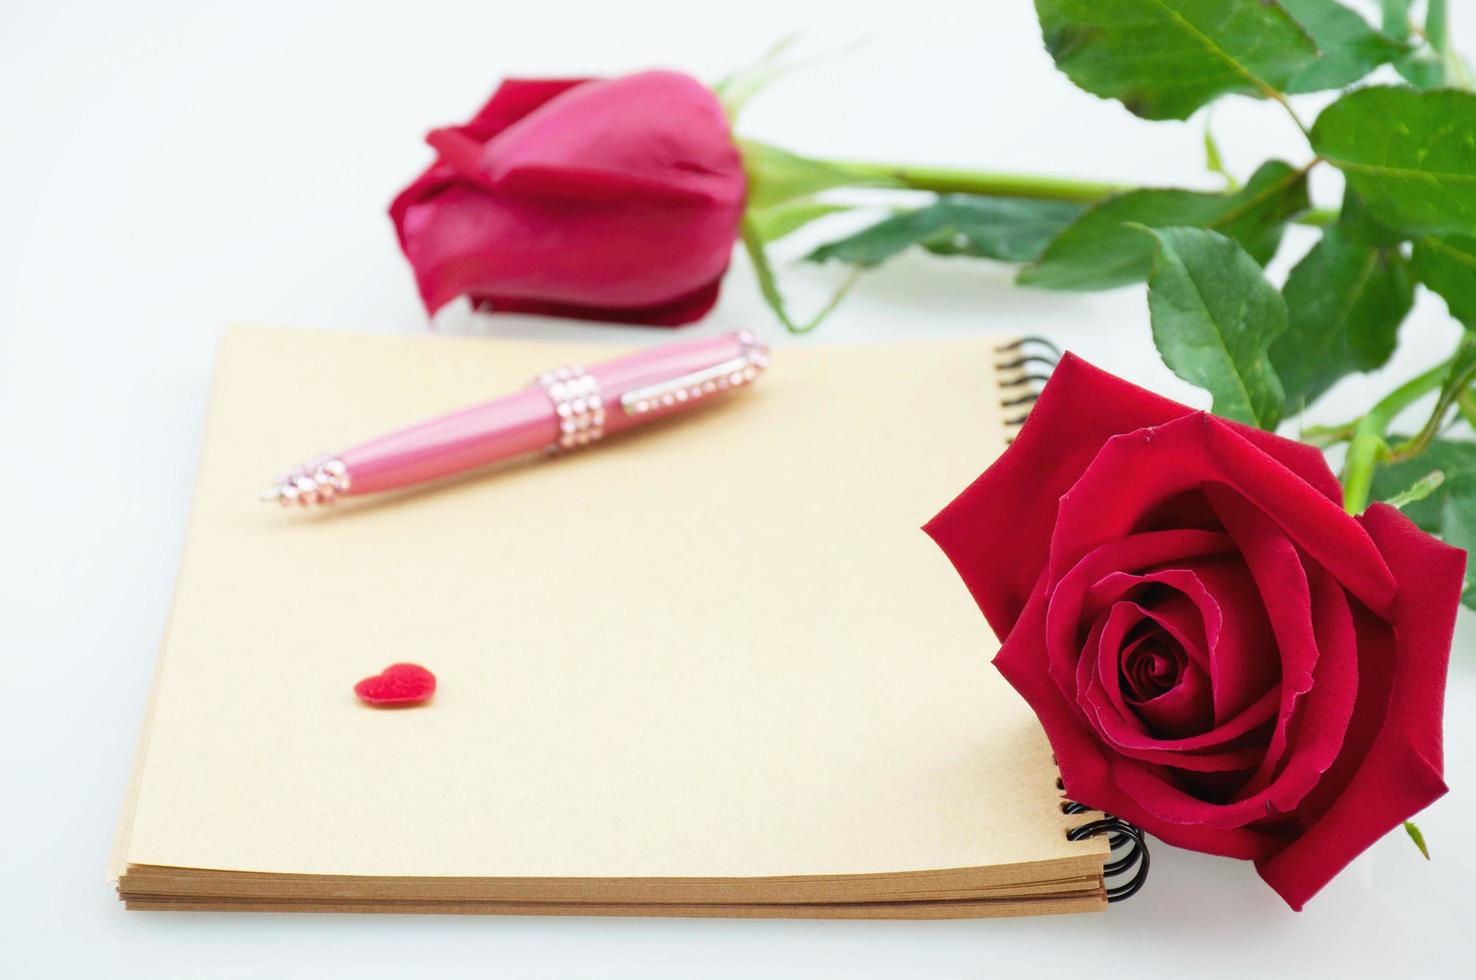 stylo rose et rose rouge avec carnet sur fond blanc - concept de carte électronique amour et fleur photo